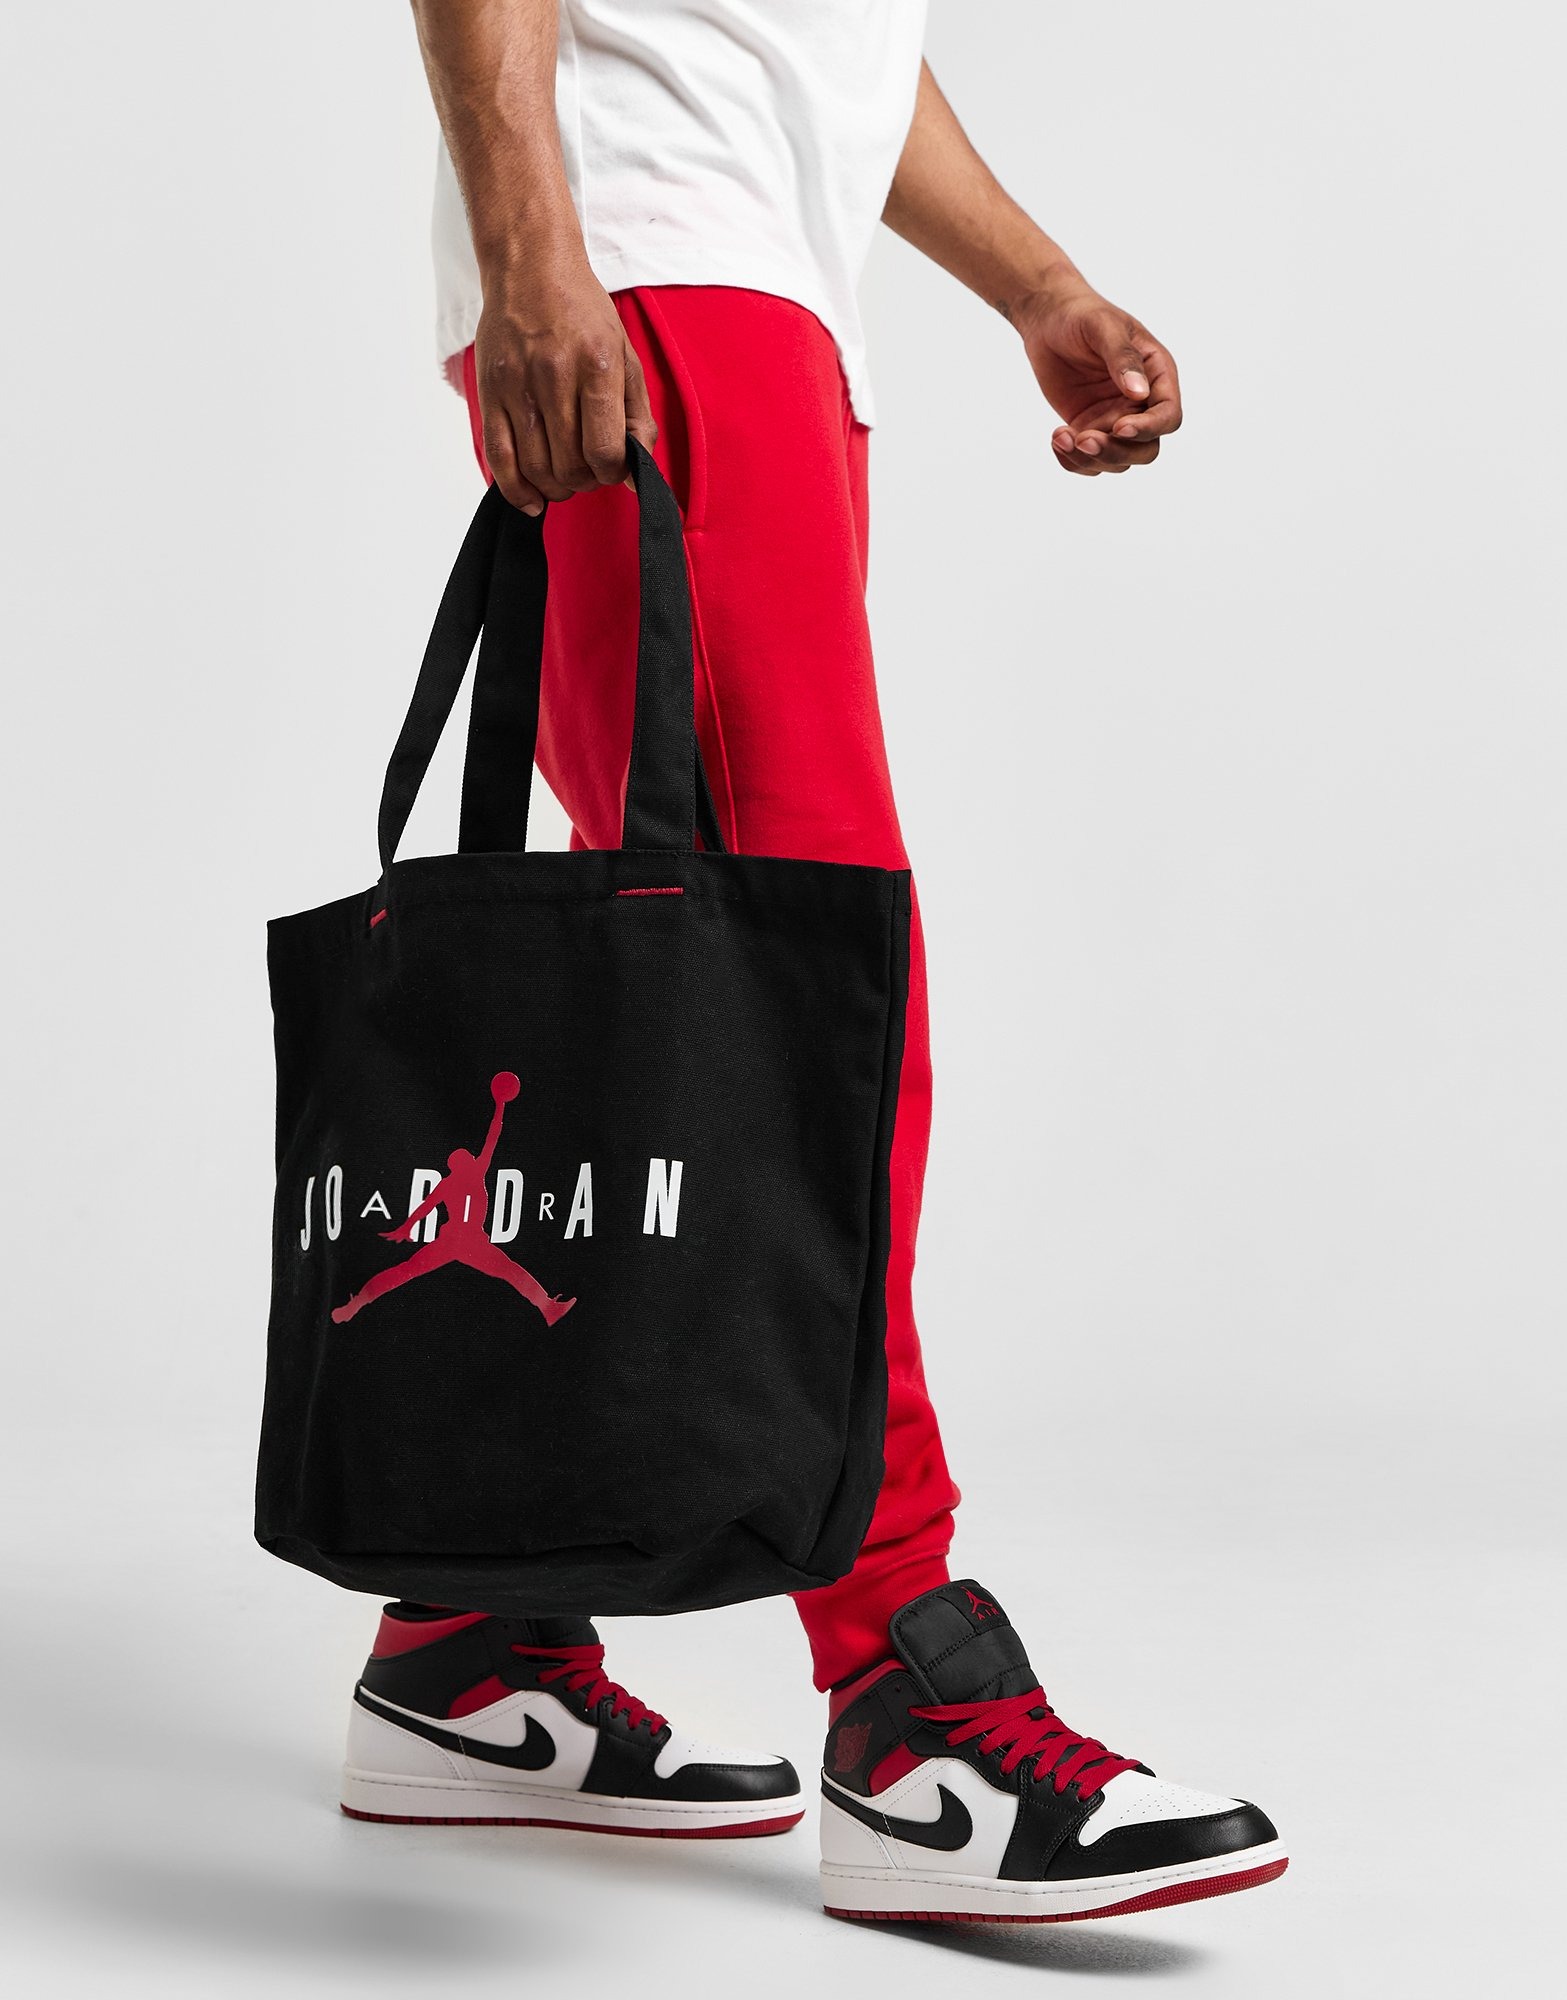 Black Jordan Tote Bag | JD Sports UK